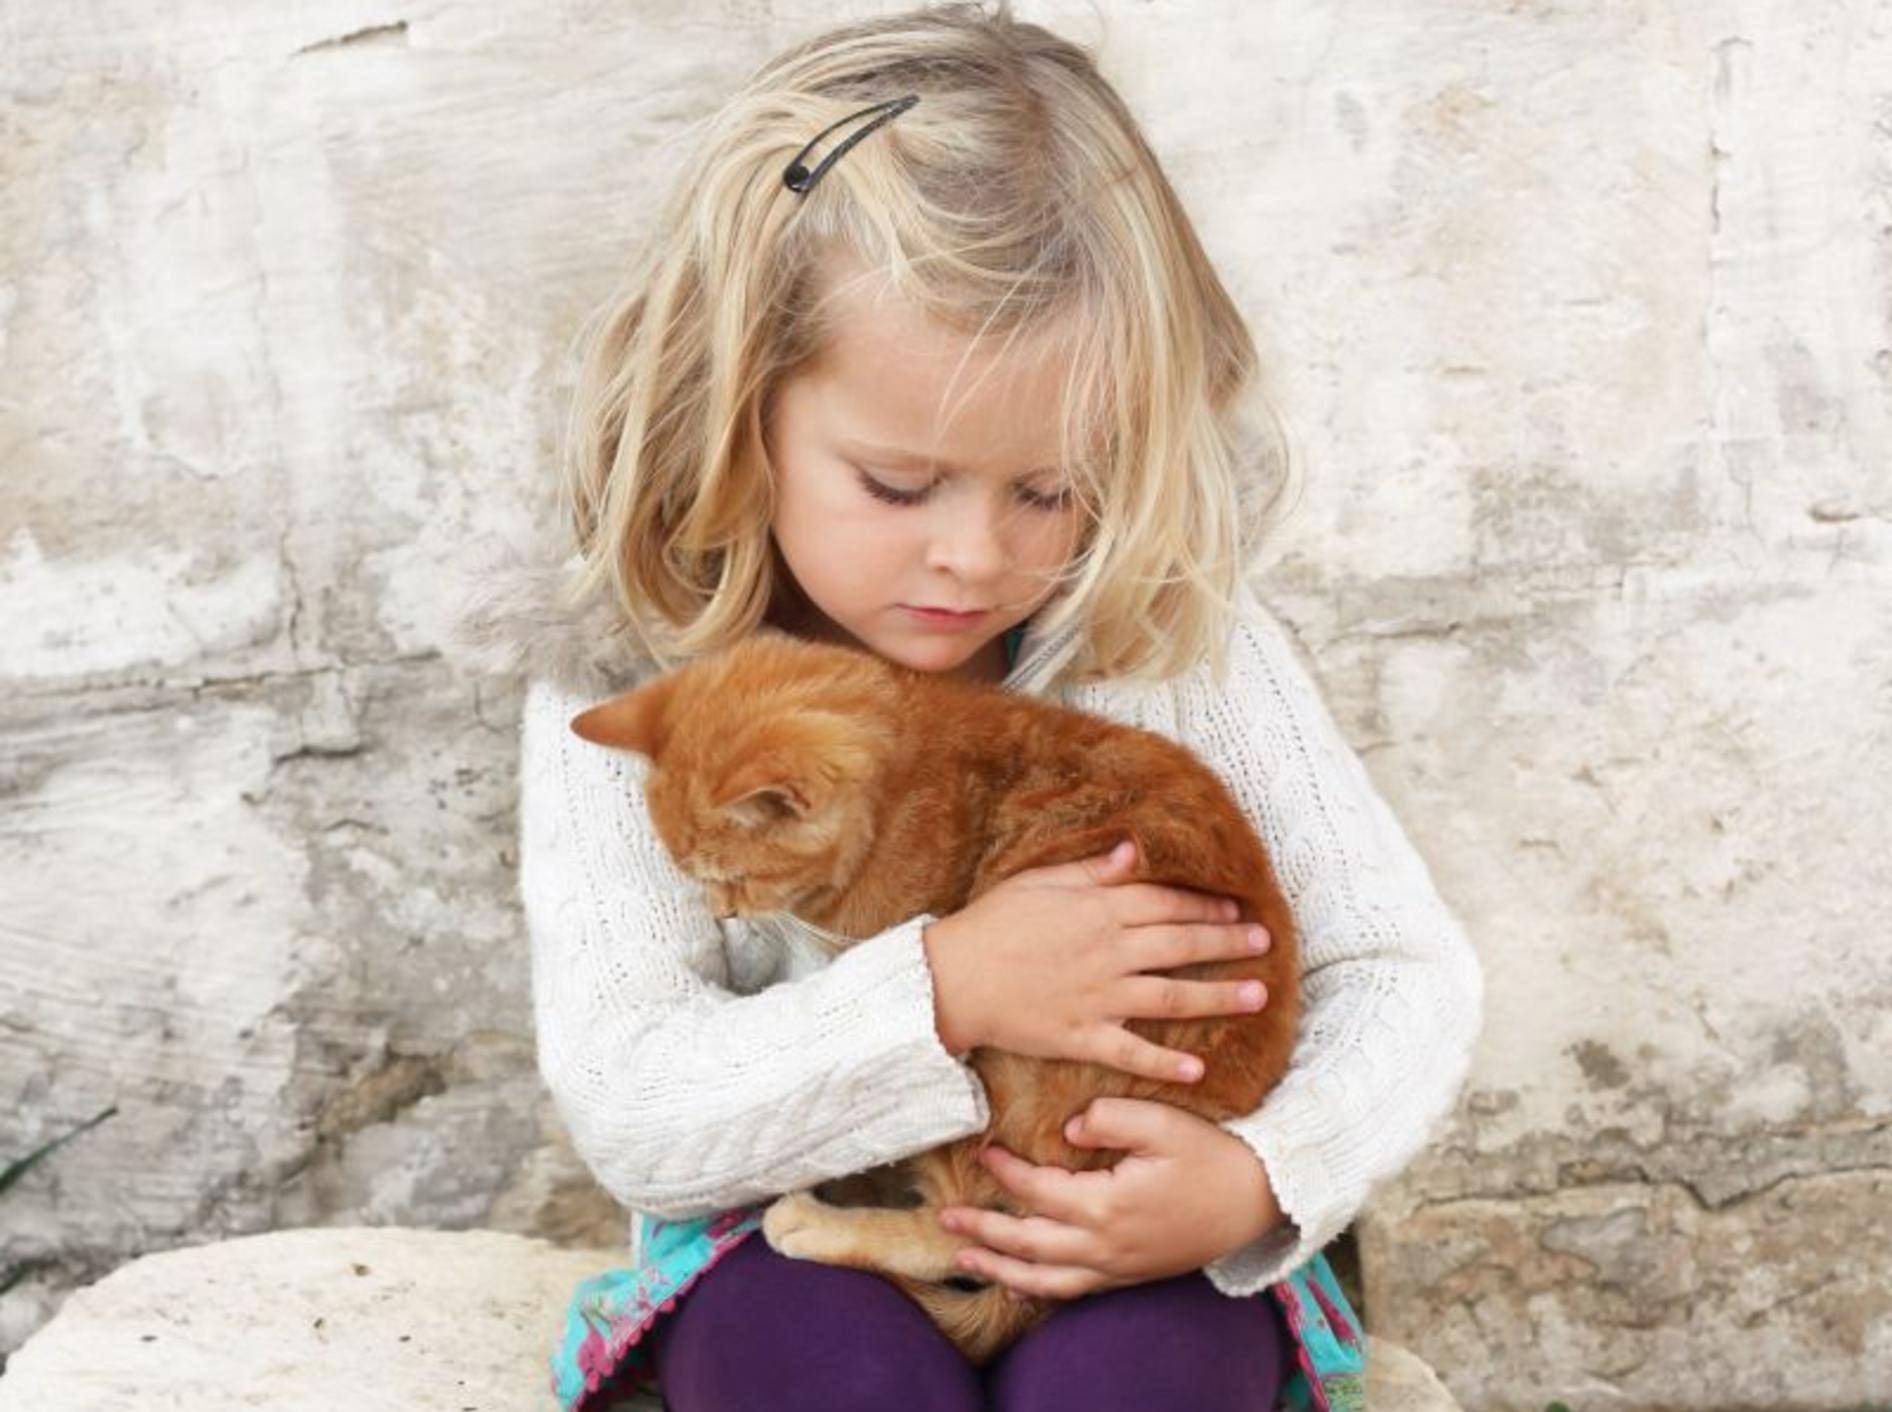 Kind und Katze: Süße Kuschelfreunde — Bild: Shutterstock / AnneMS